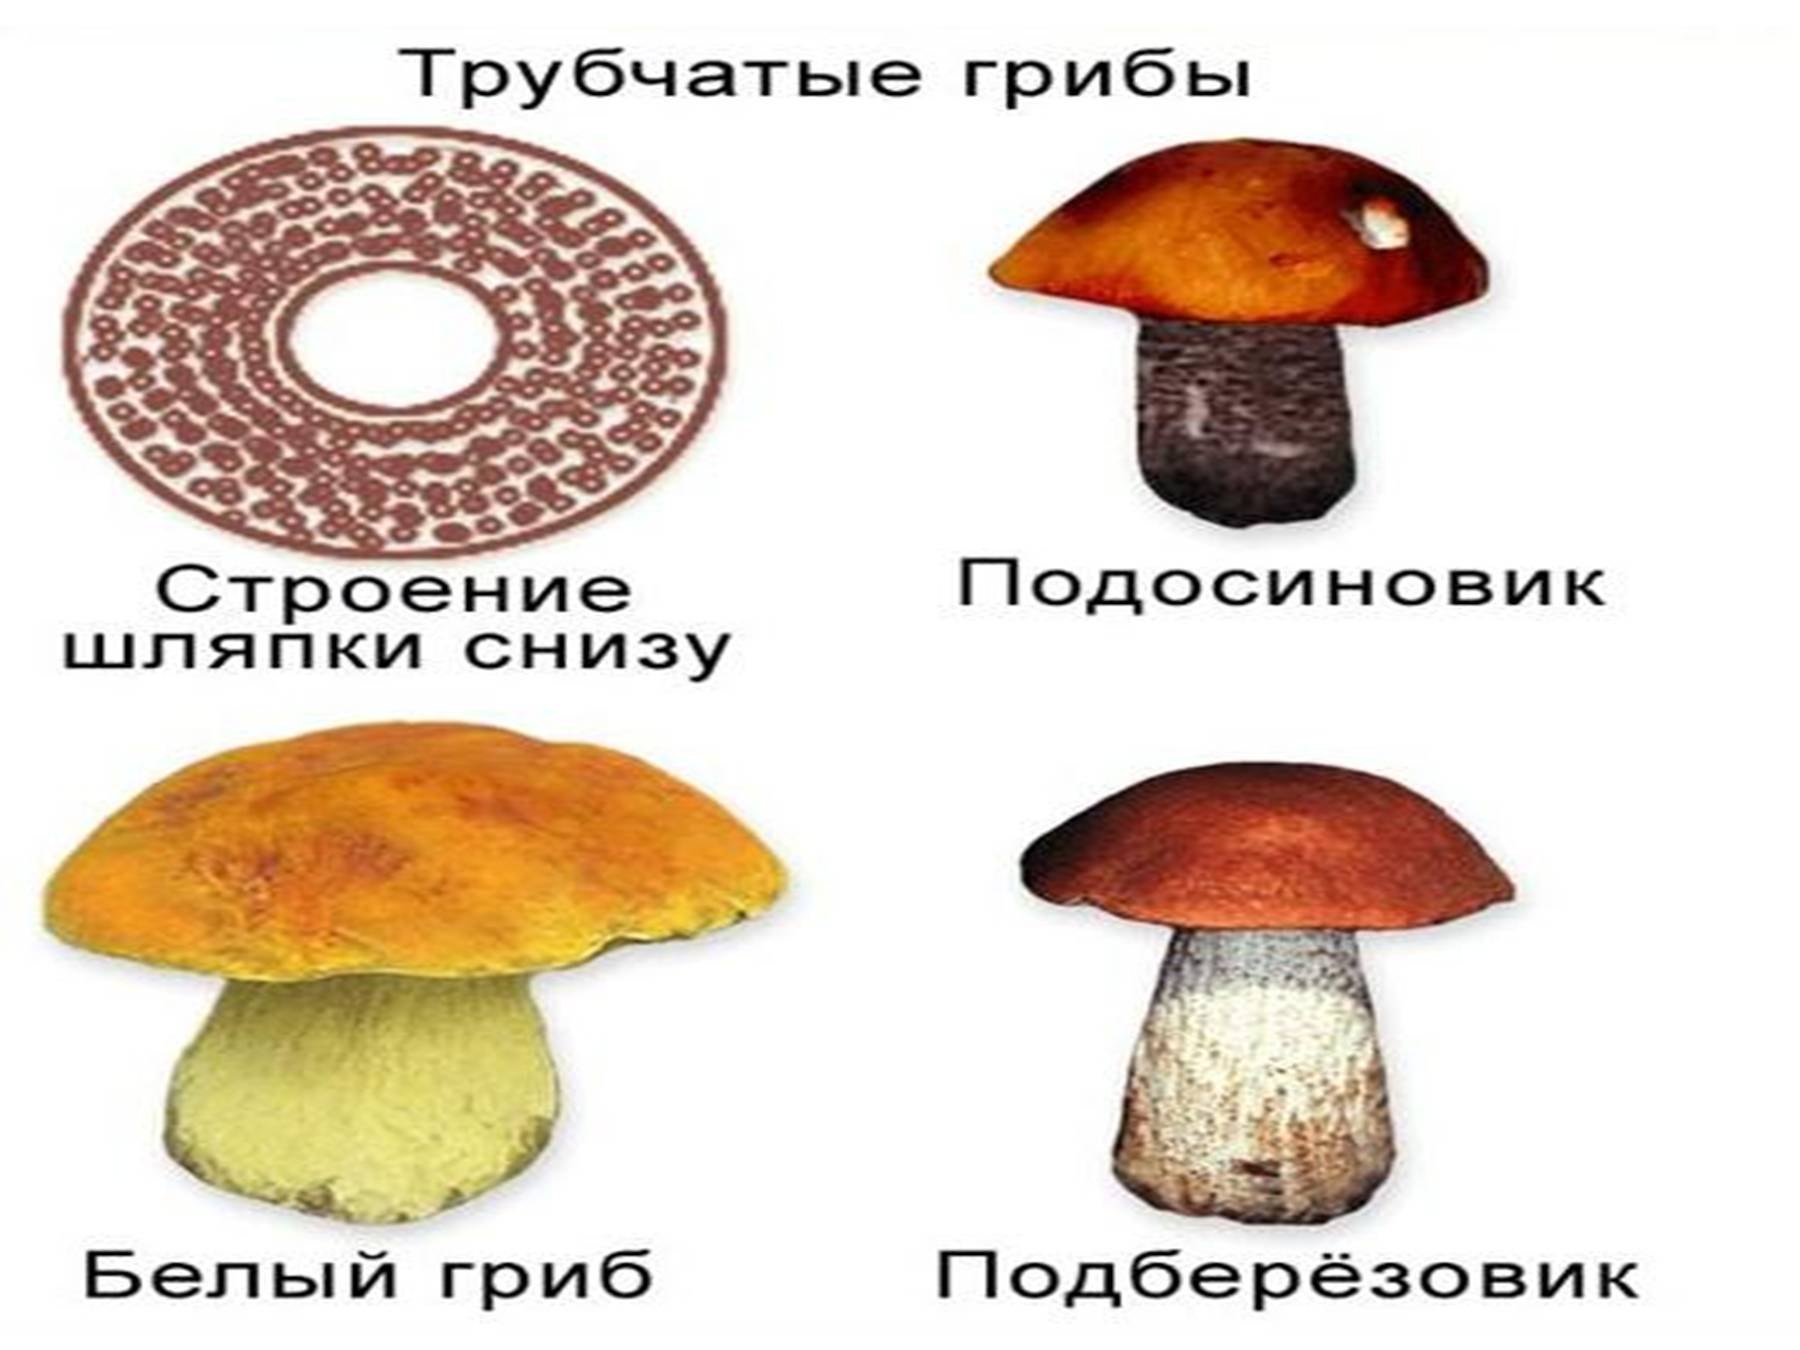 1) Трубчатые грибы 2) пластинчатые грибы